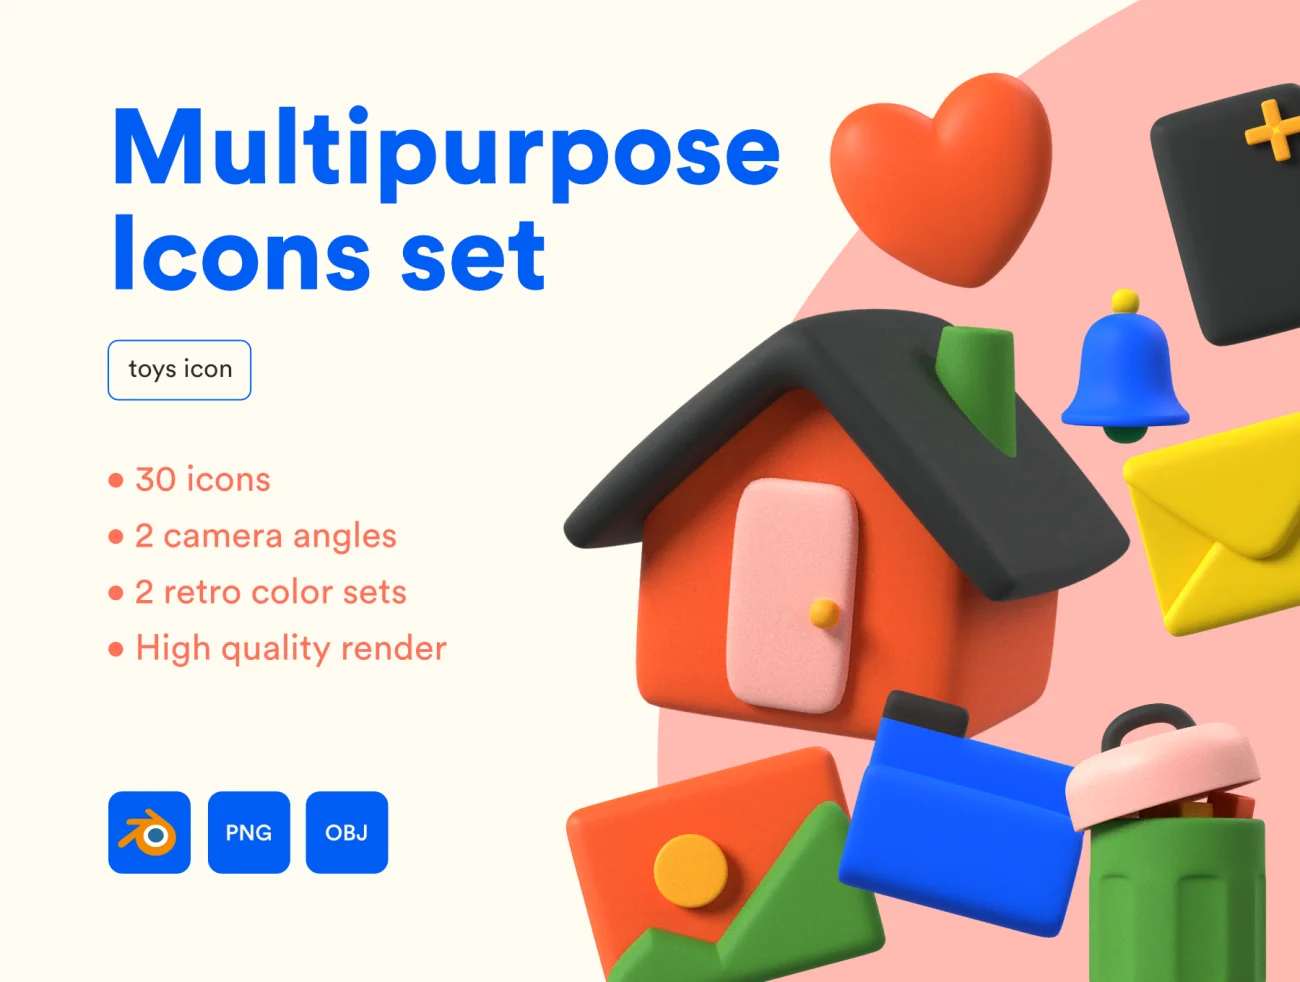 30款购物拍摄常用3D图标素材下载 Multipurpose Icon Set .blender .psd .figma插图9